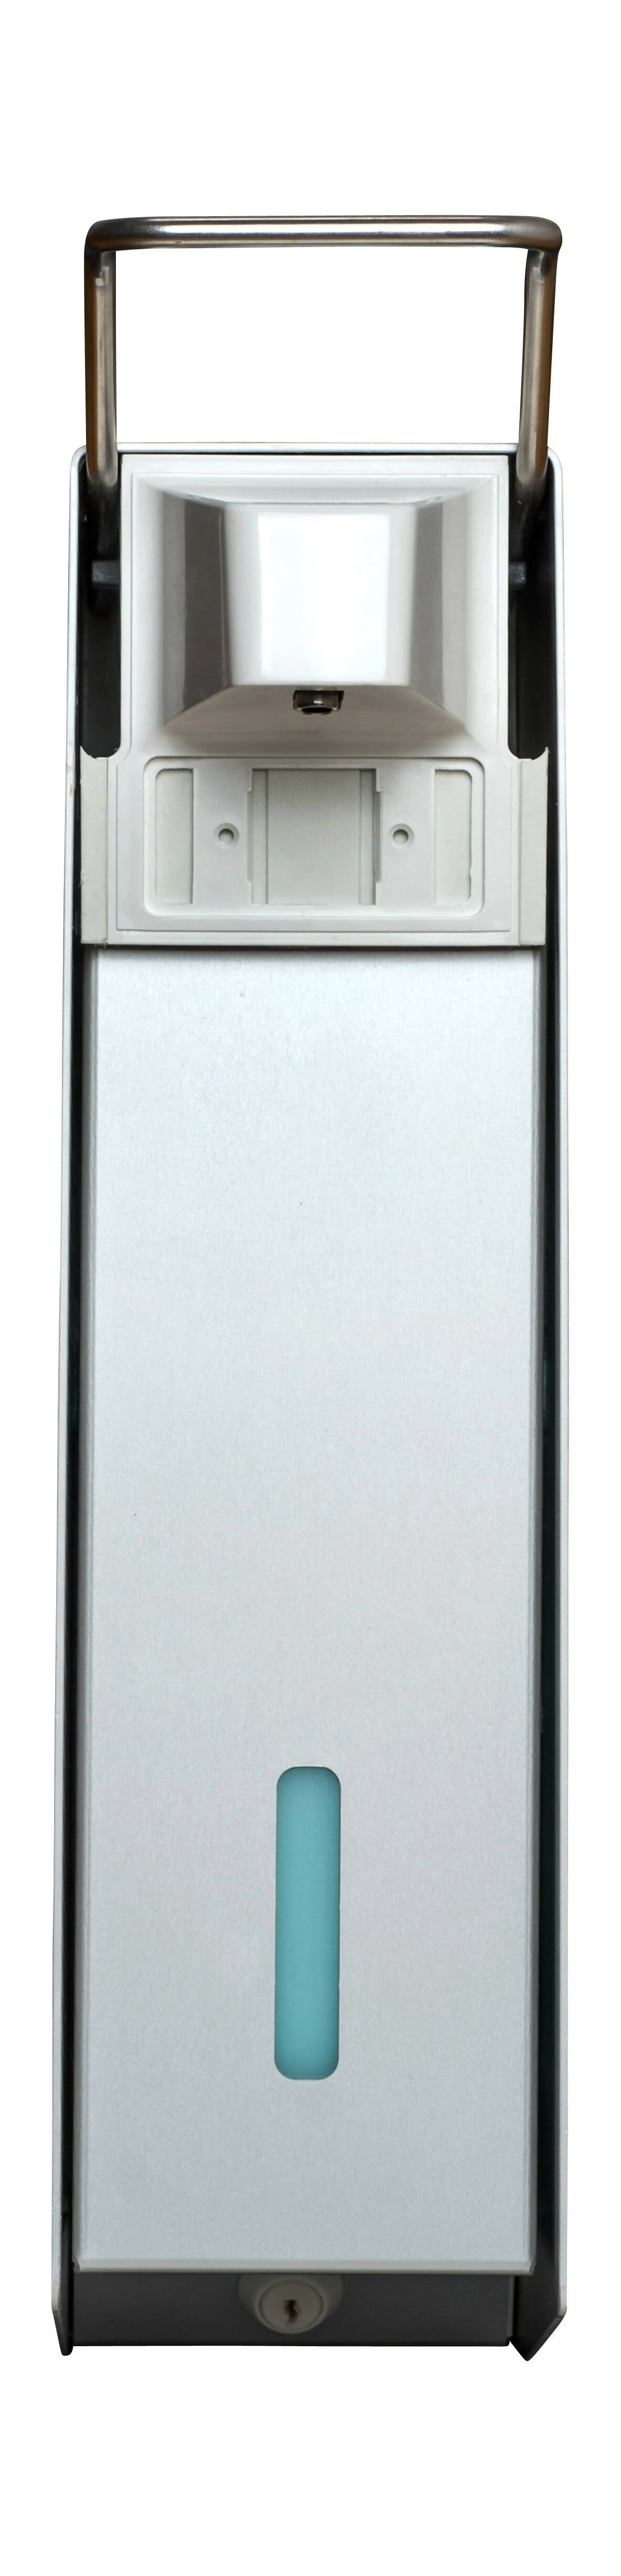 SORIFA - Distributeur mural métallique robuste, ergonomique, verrouillable pour flacon 2.5L de marque SORIFA - Pour gels et savons liquides. - 0